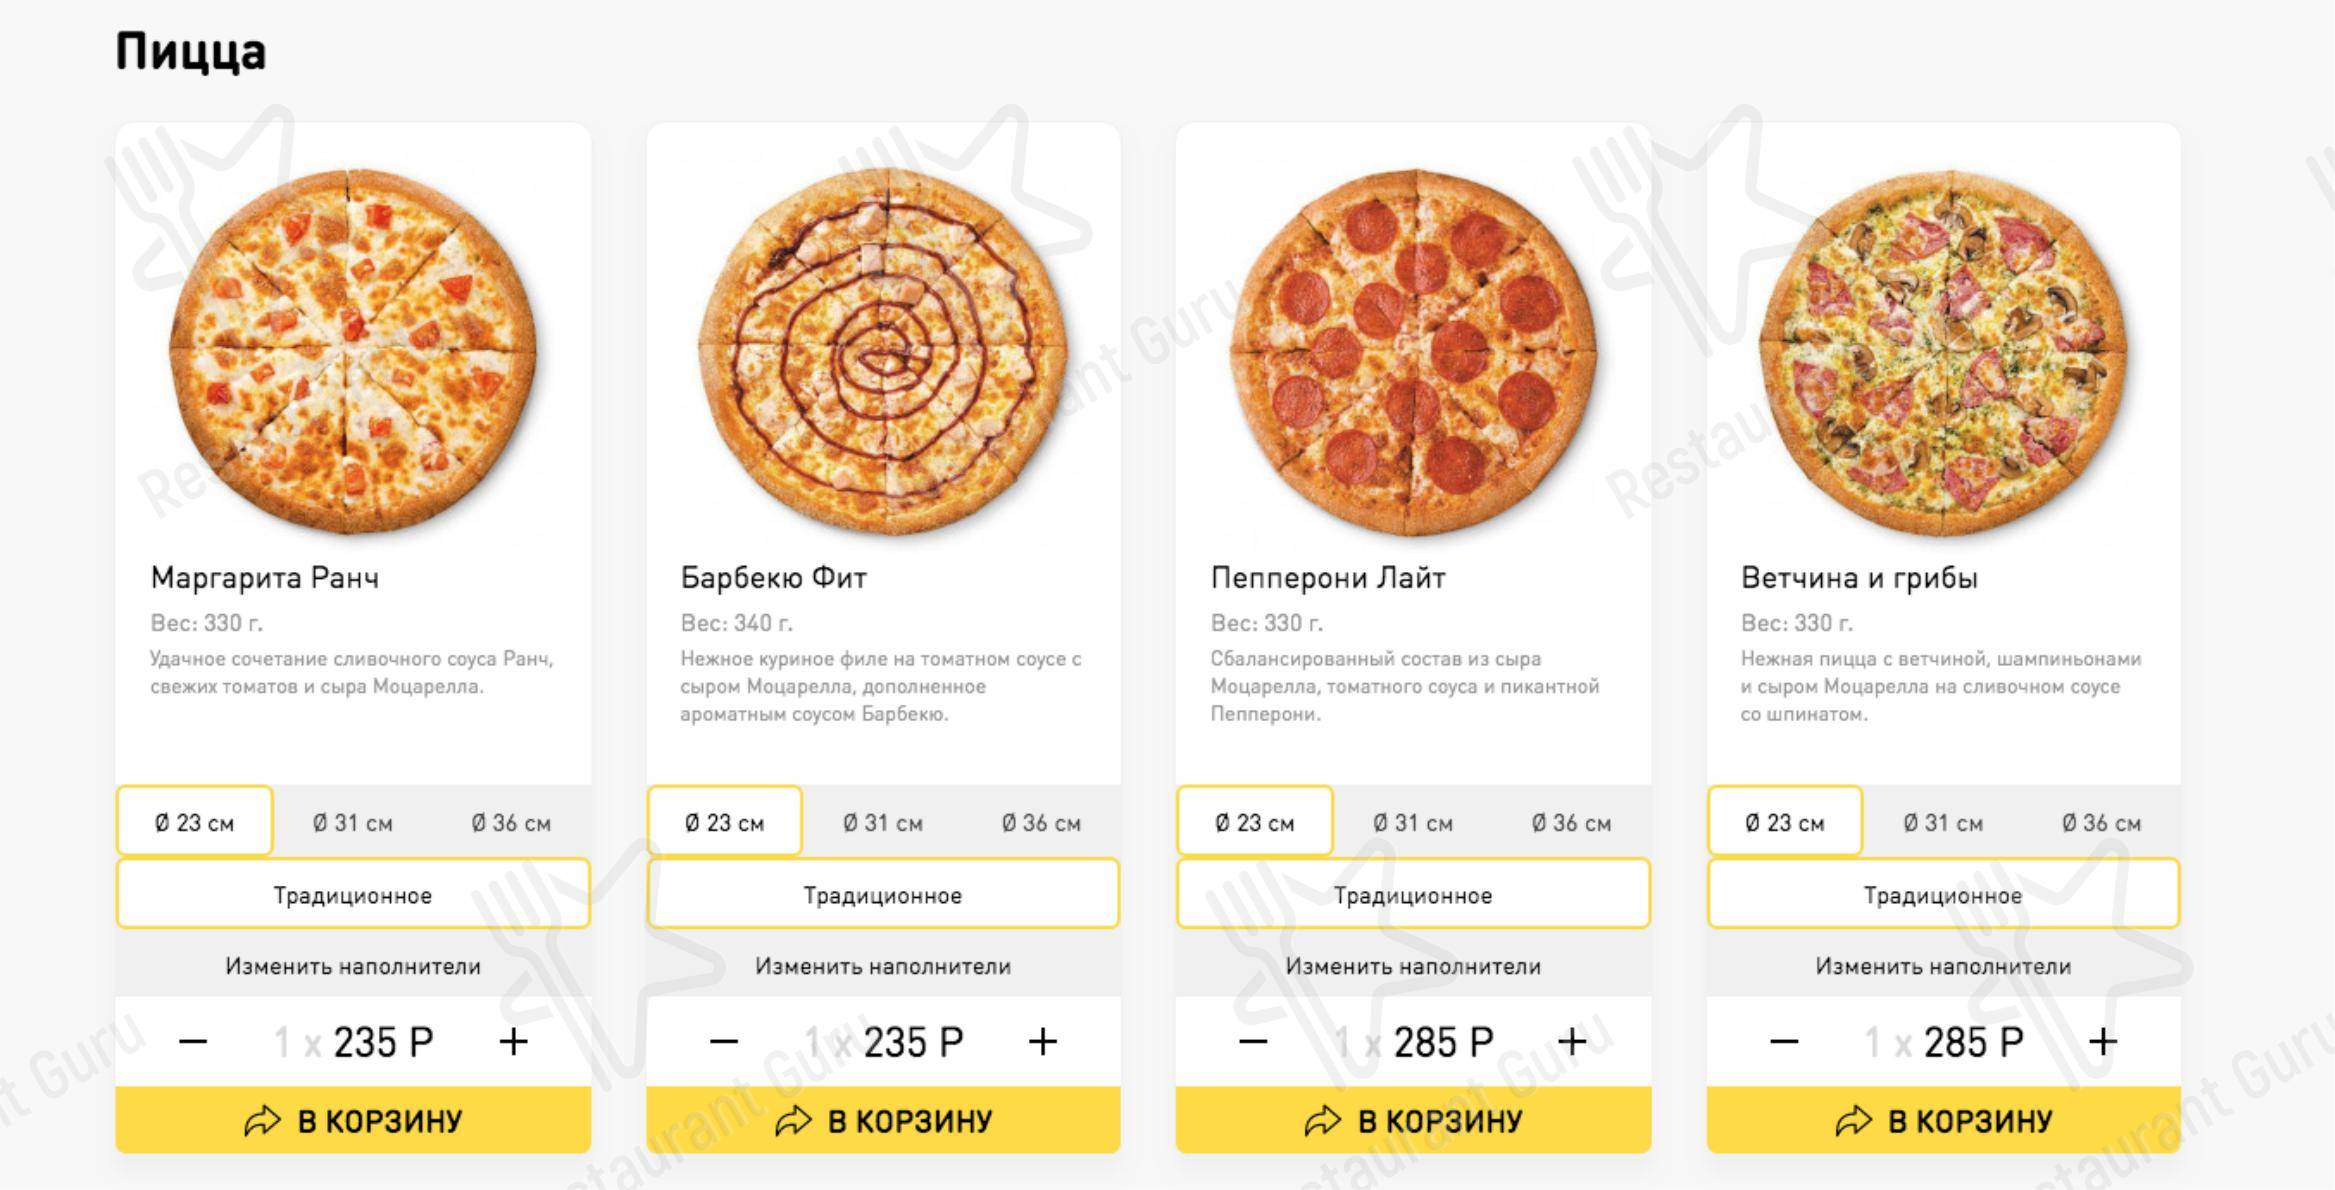 лучшая доставка пиццы в москве рейтинг фото 94